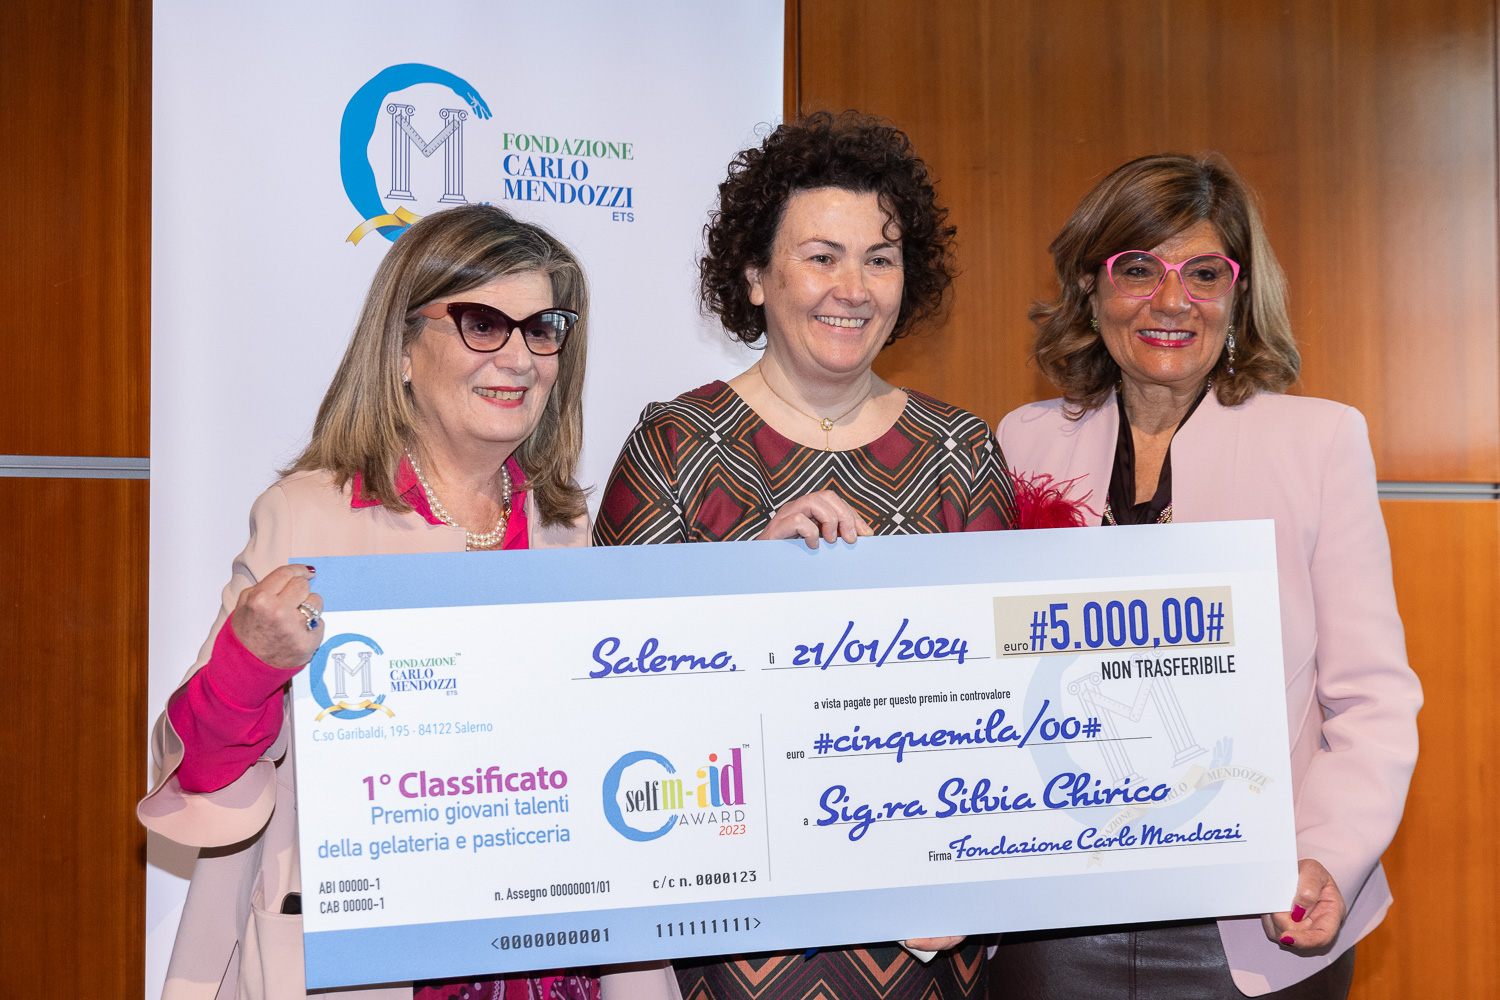 La cilentana Silvia Chirico vince Self Maid Award, il premio della Fondazione Carlo Mendozzi